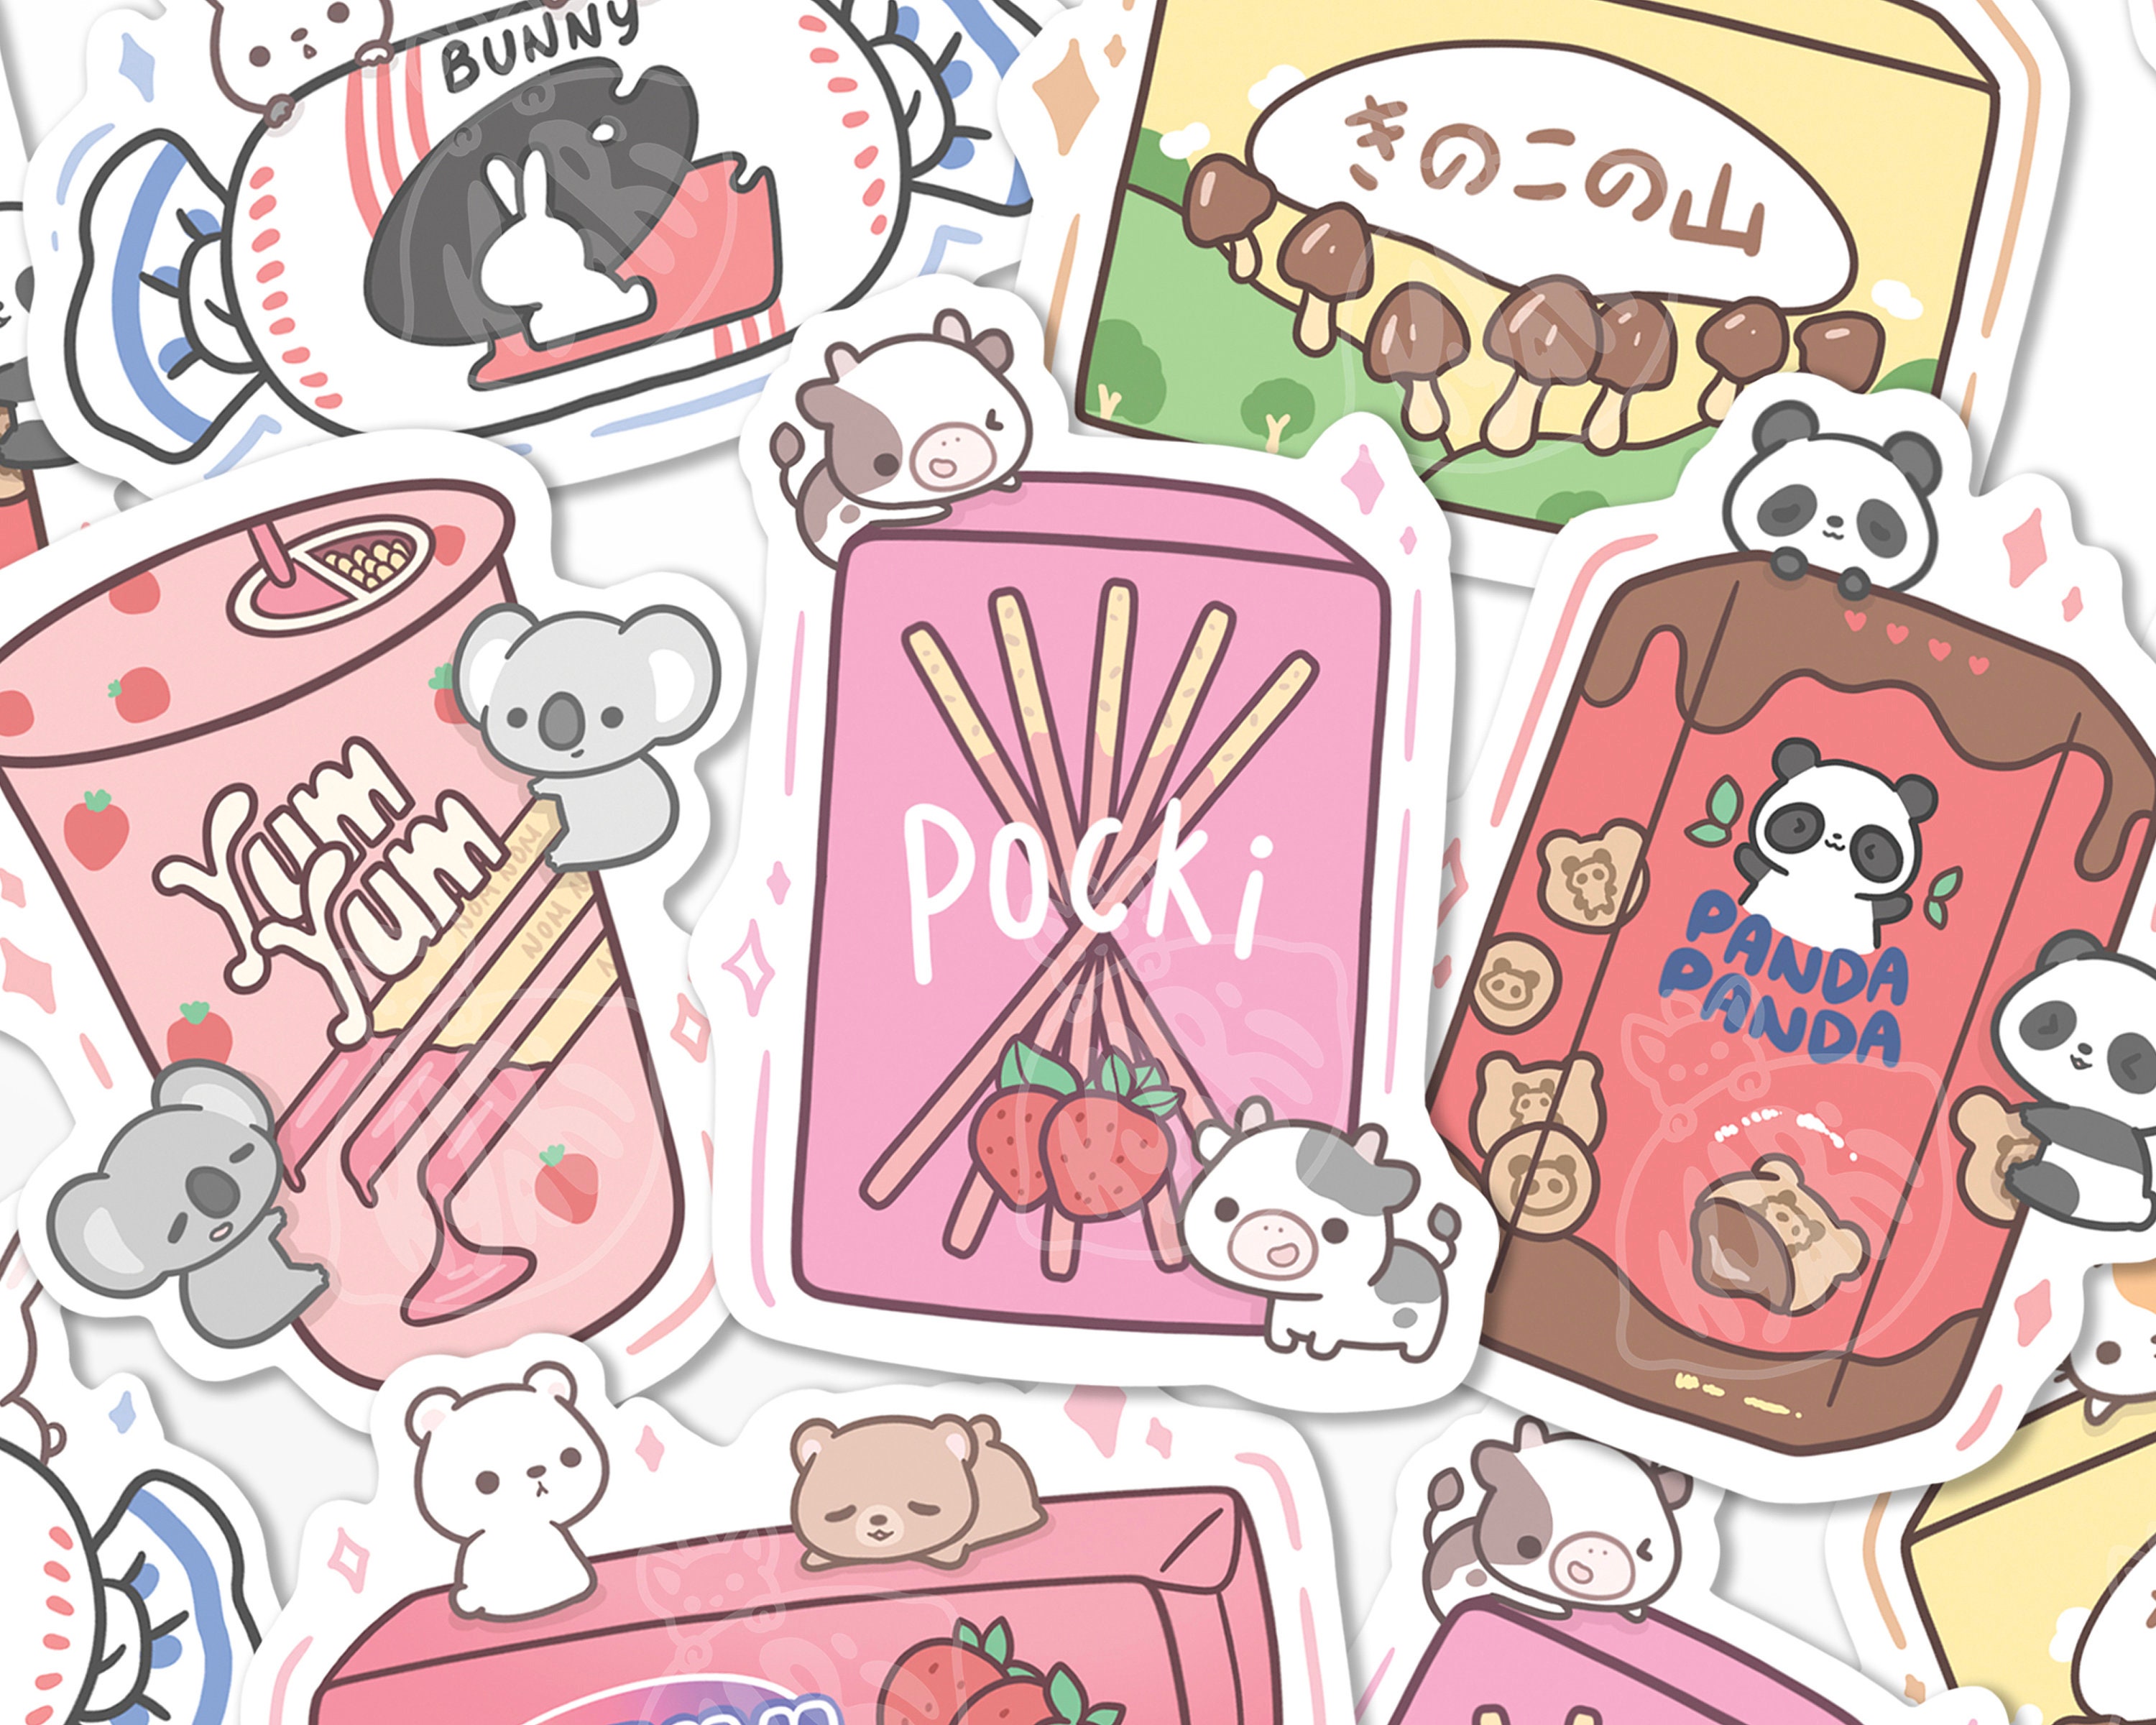 Kawaii Kpop Toploader Deco Stickers, Pixel Bunny Stickers, Tulip